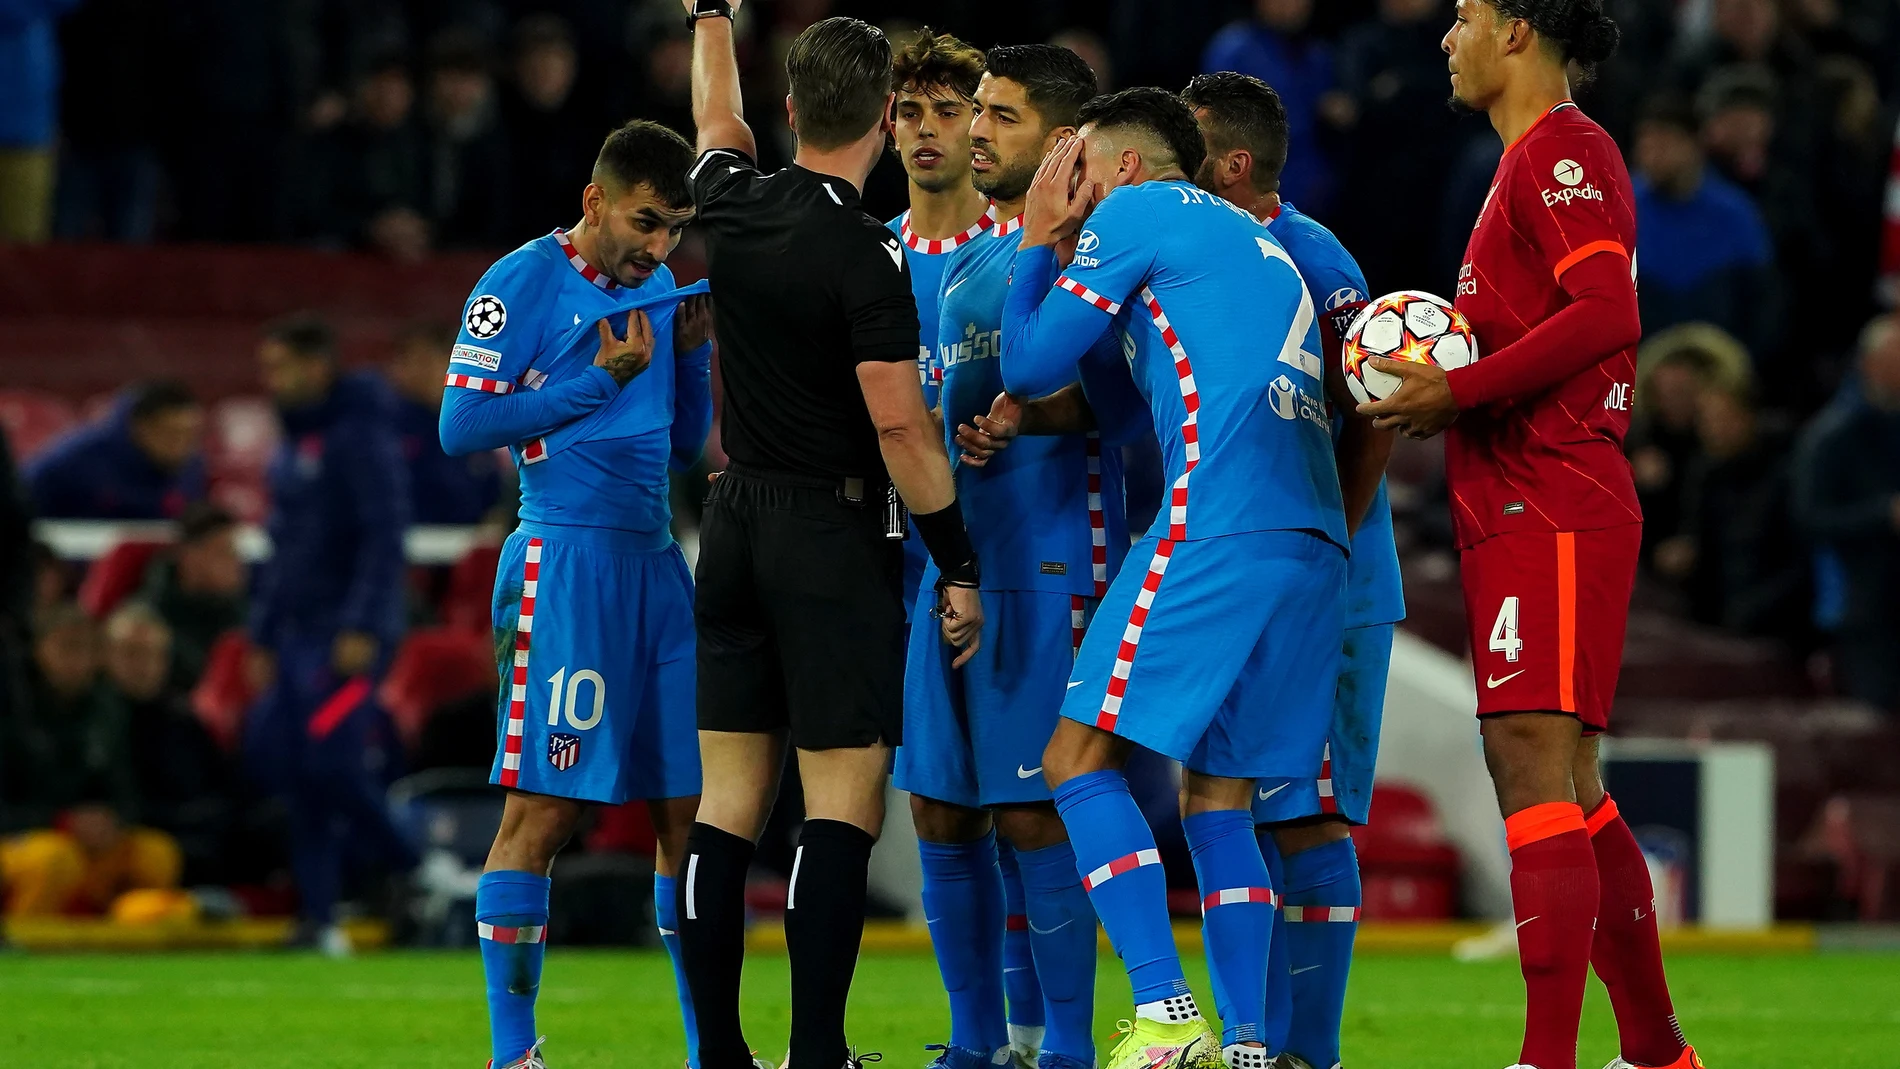 Los jugadores del Atlético protestan a Danny Makkelie, el árbitro neerlandés del Liverpool - Atlético, por la expulsión de Felipe